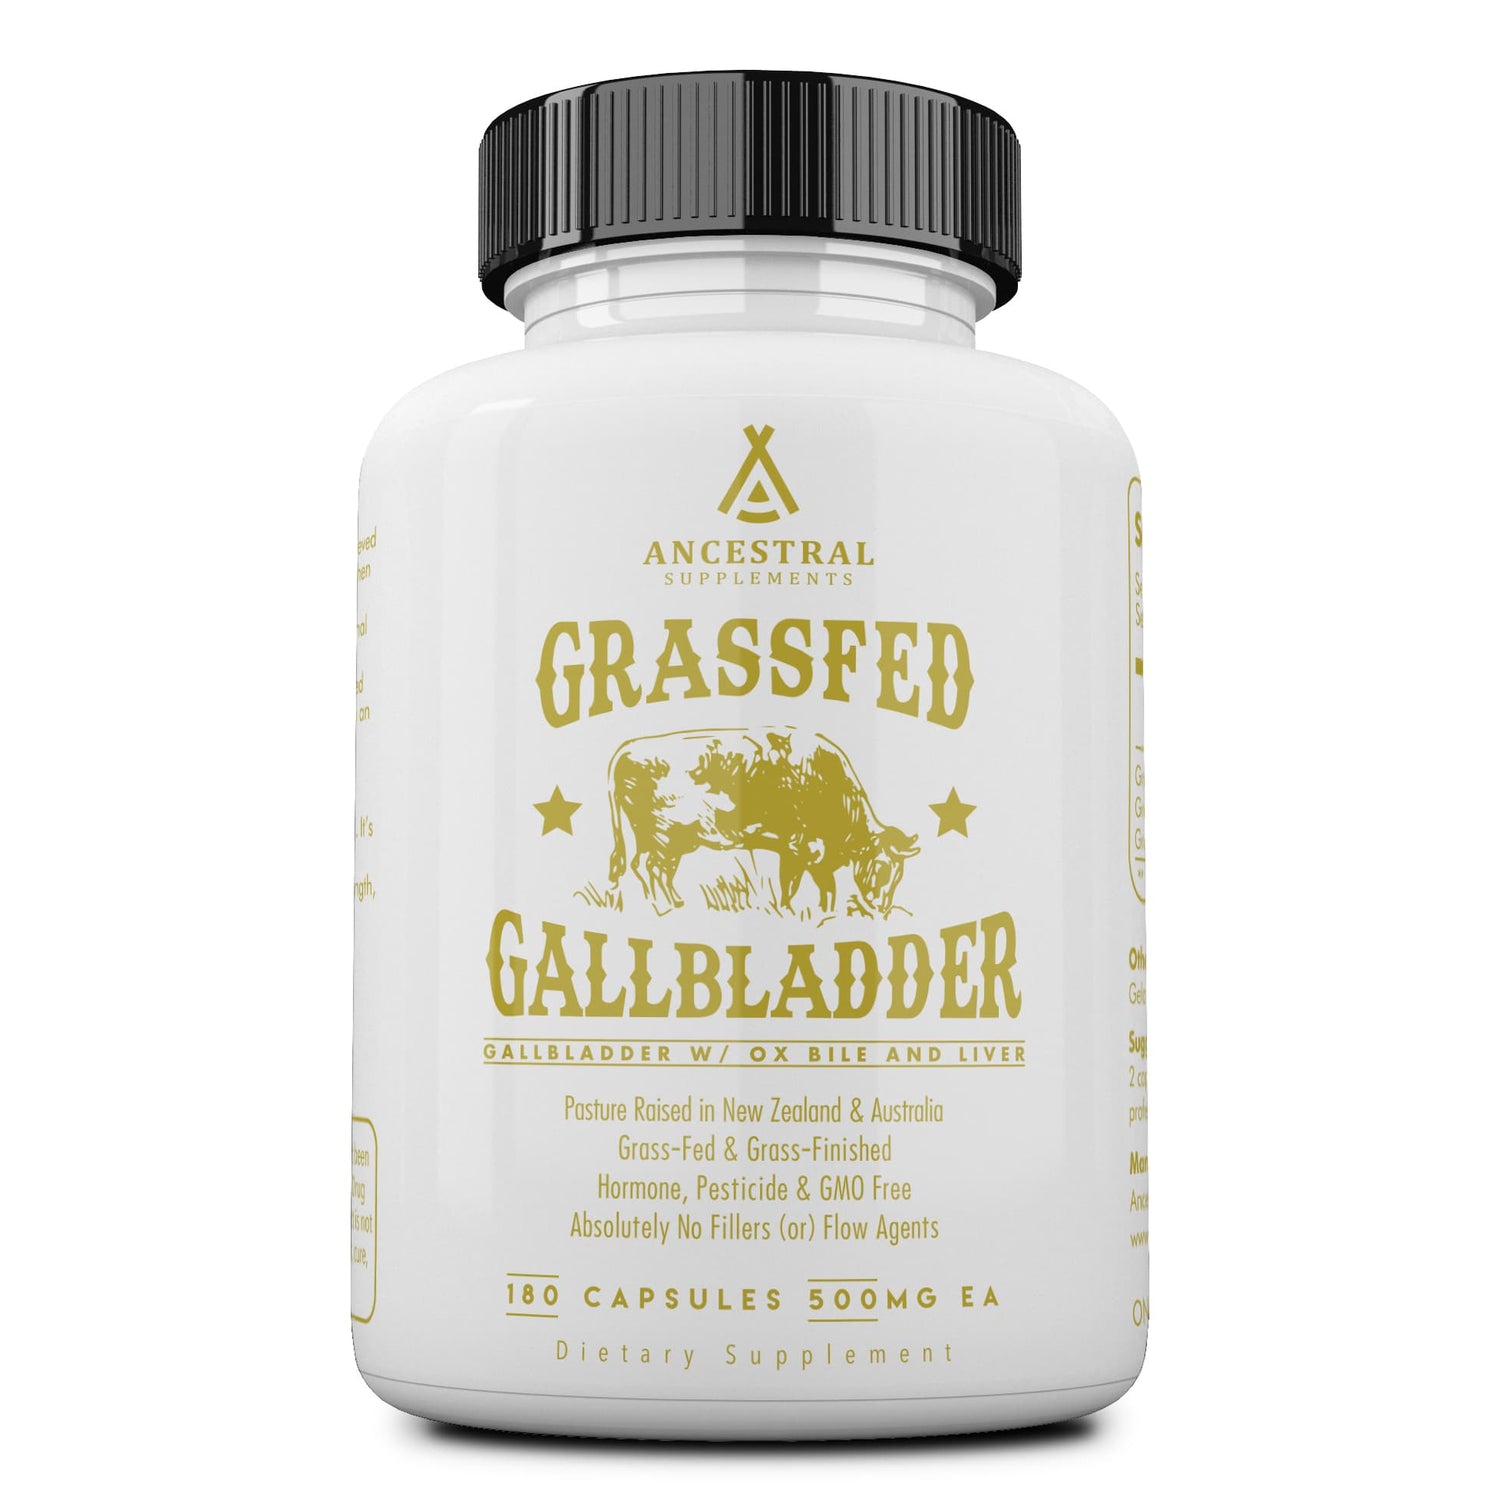 Ancestral supplements - Ancestral supplements grassfed beef Gallbladder